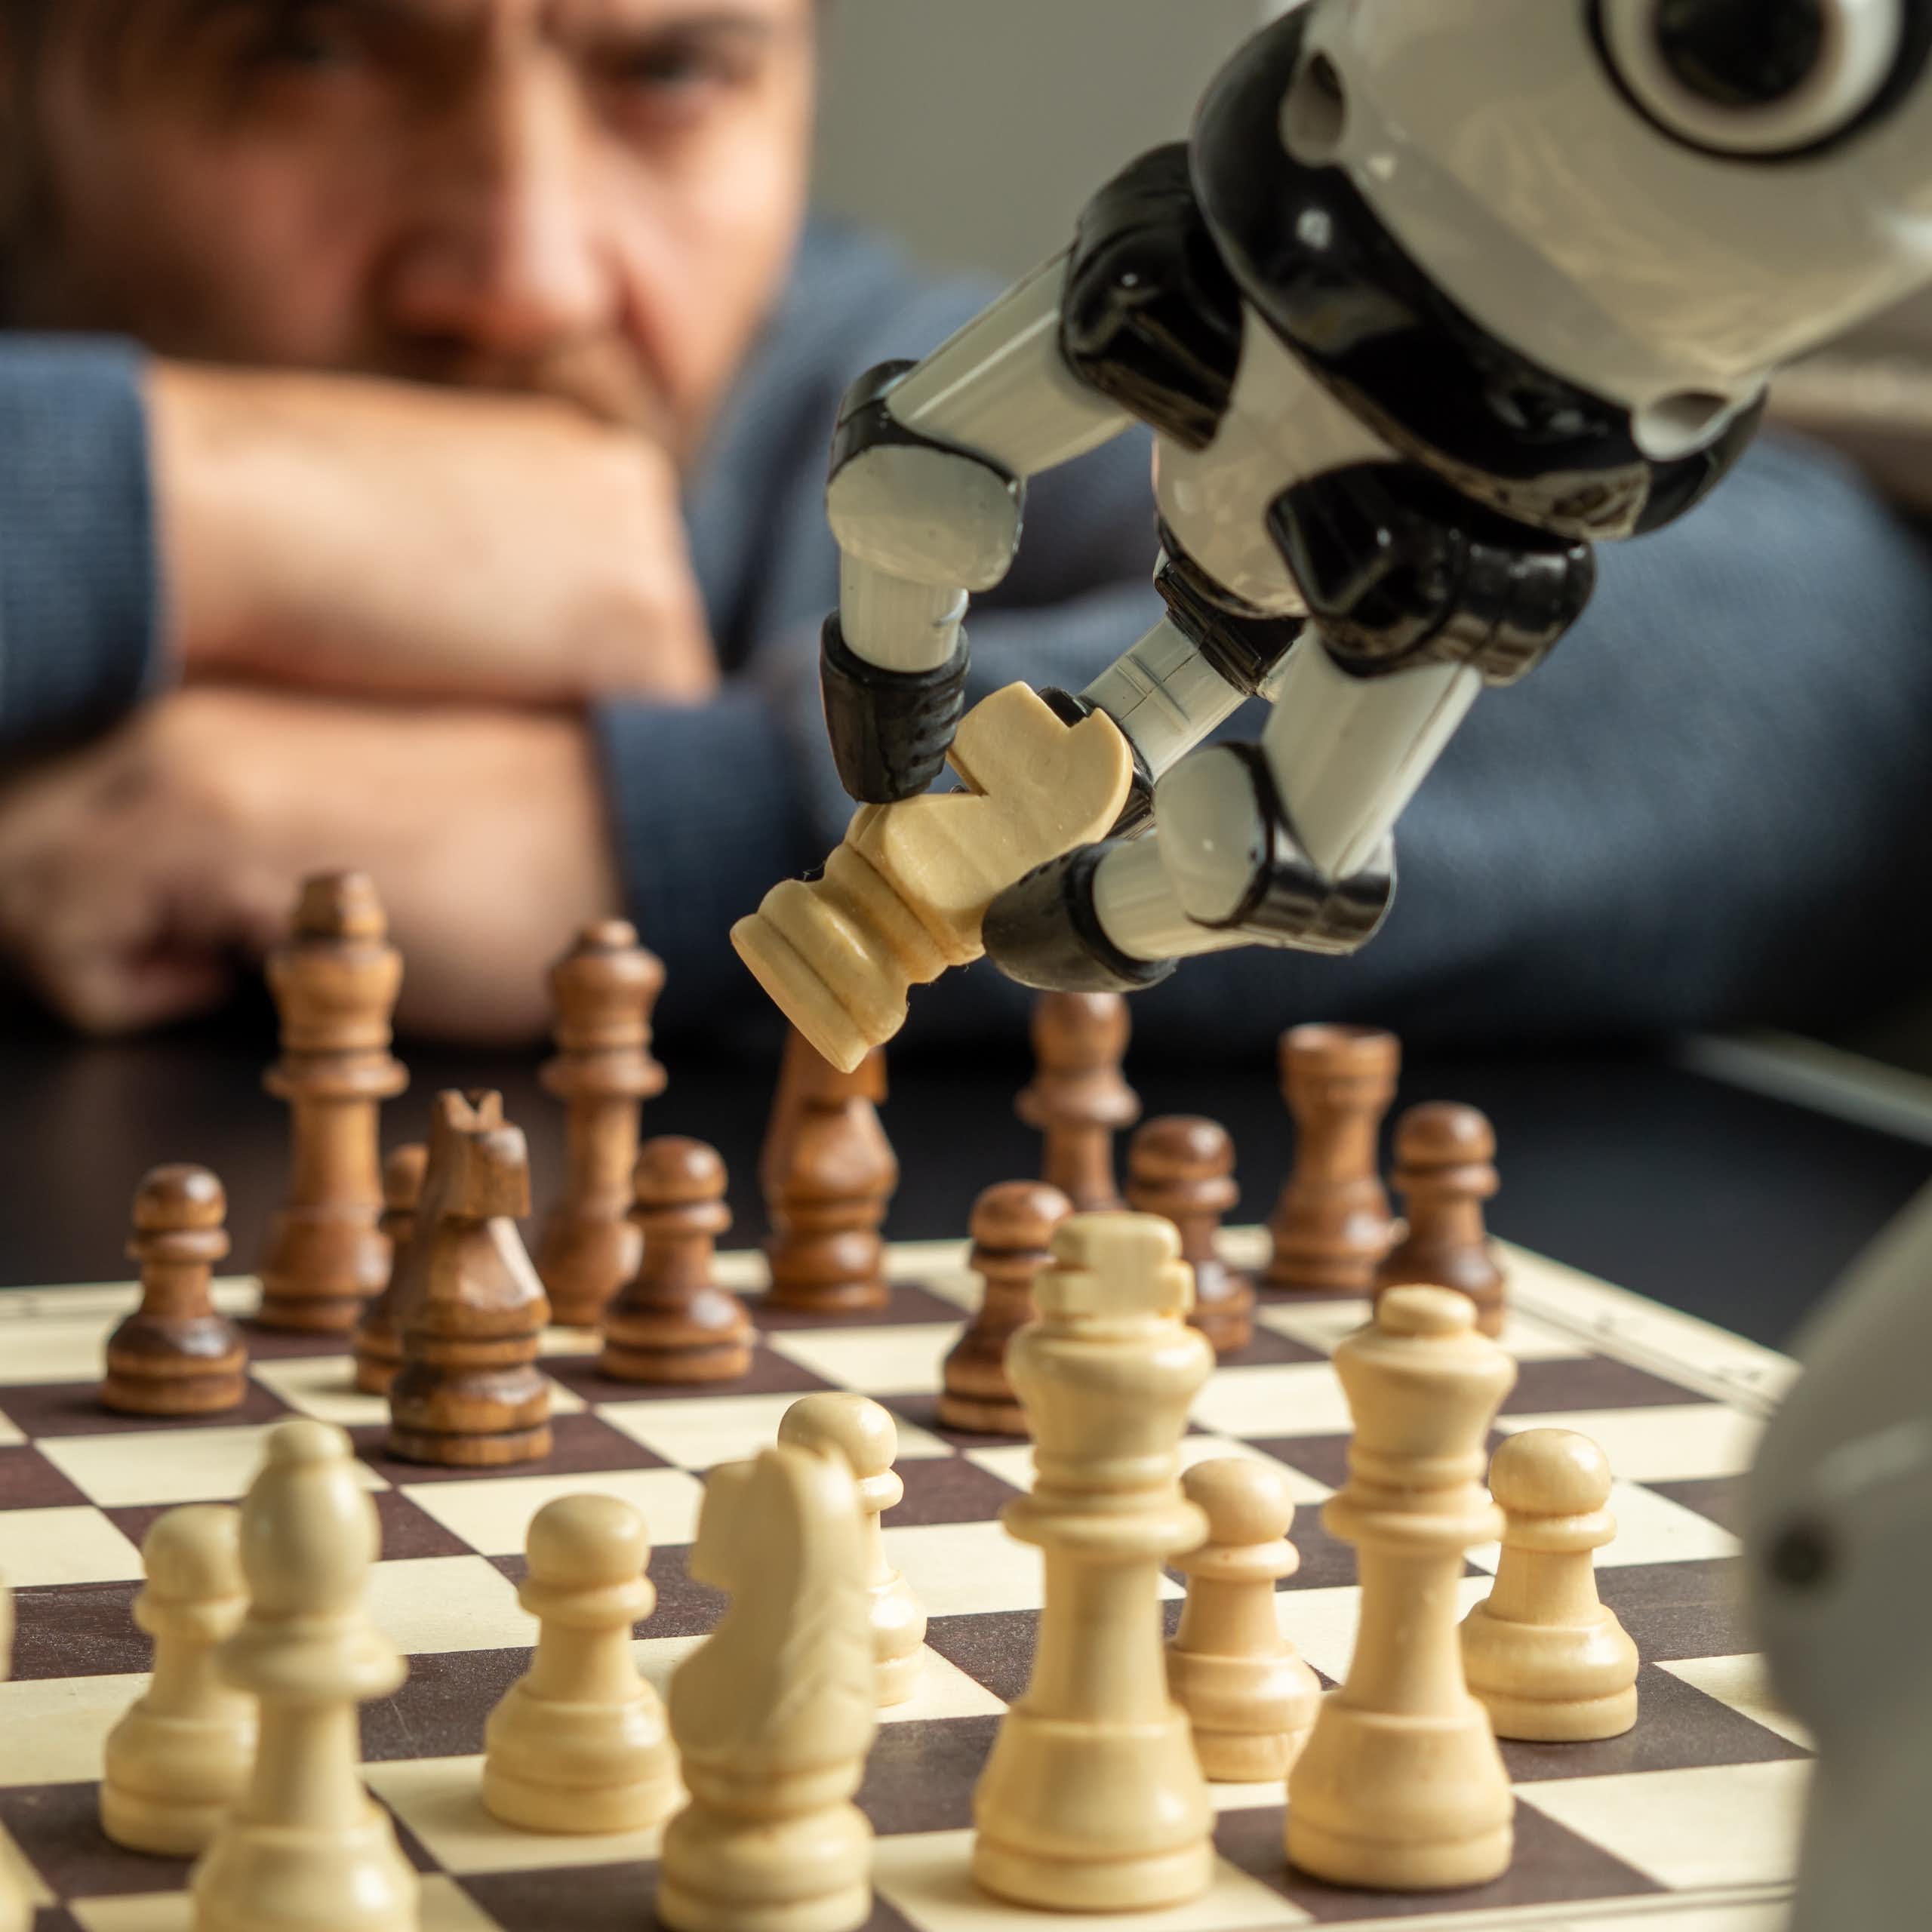 Un bras robotisé saisit une pièce d'échecs dans une partie contre un humain